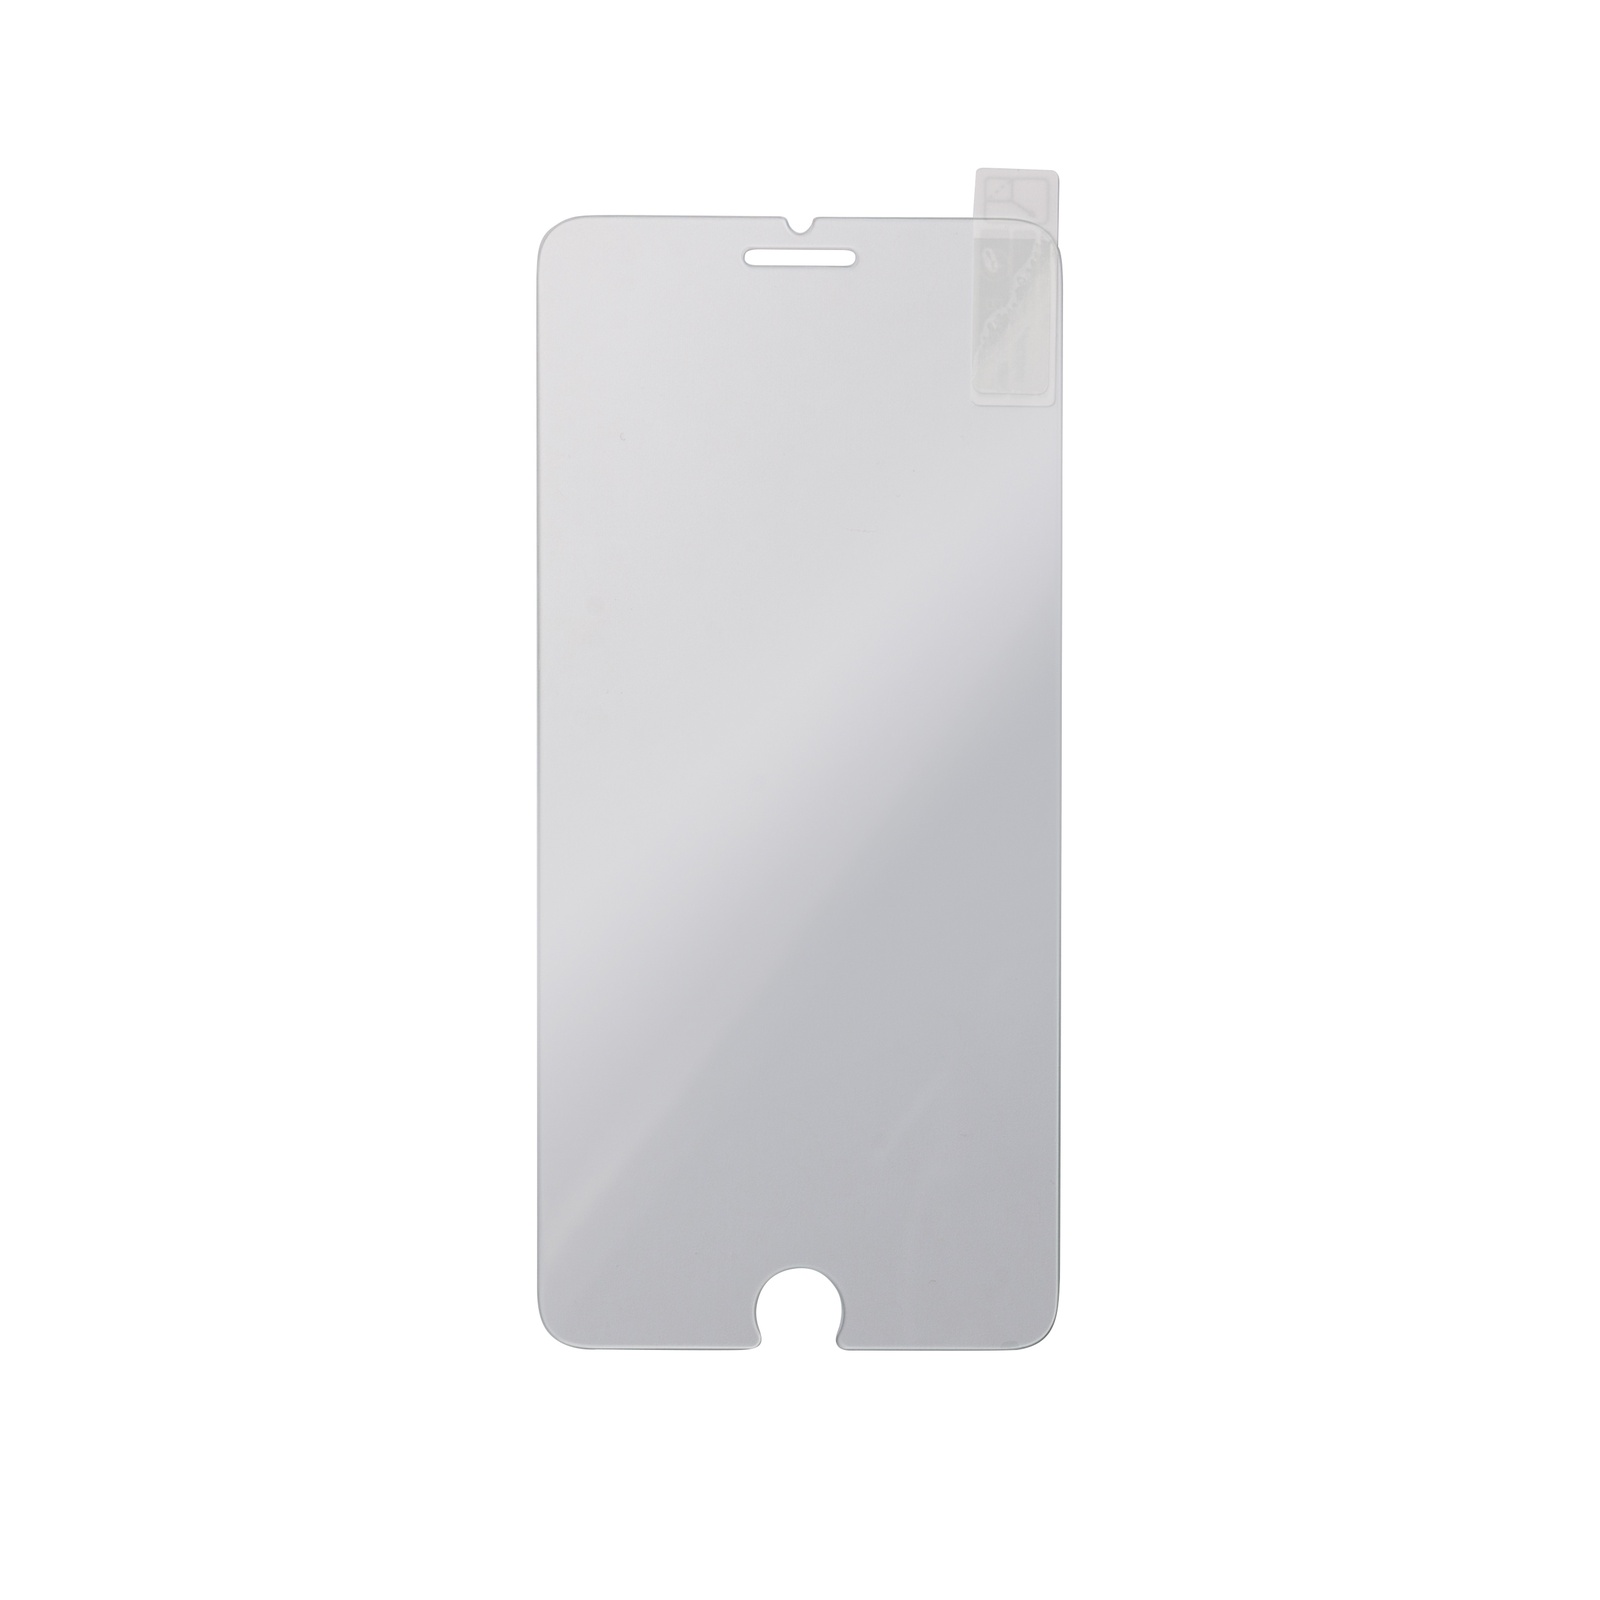 фото Mr Jefry стекло защитное (многослойное) 2,5D для IPhone 7/8